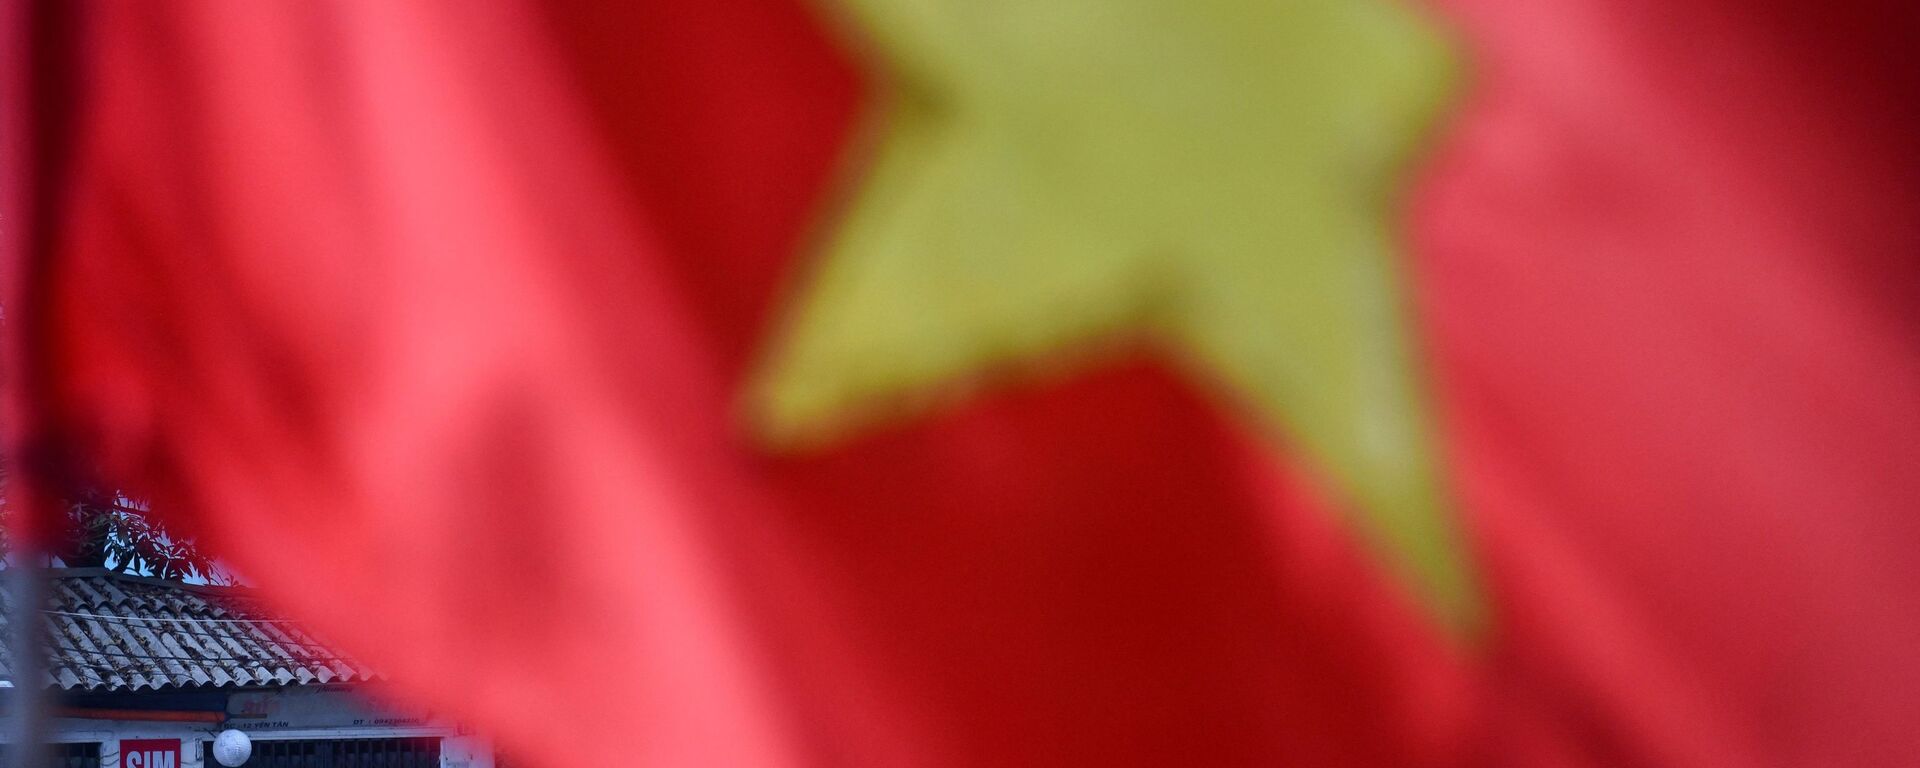 Cột cờ Việt Nam, Hà Nội. - Sputnik Việt Nam, 1920, 04.03.2021